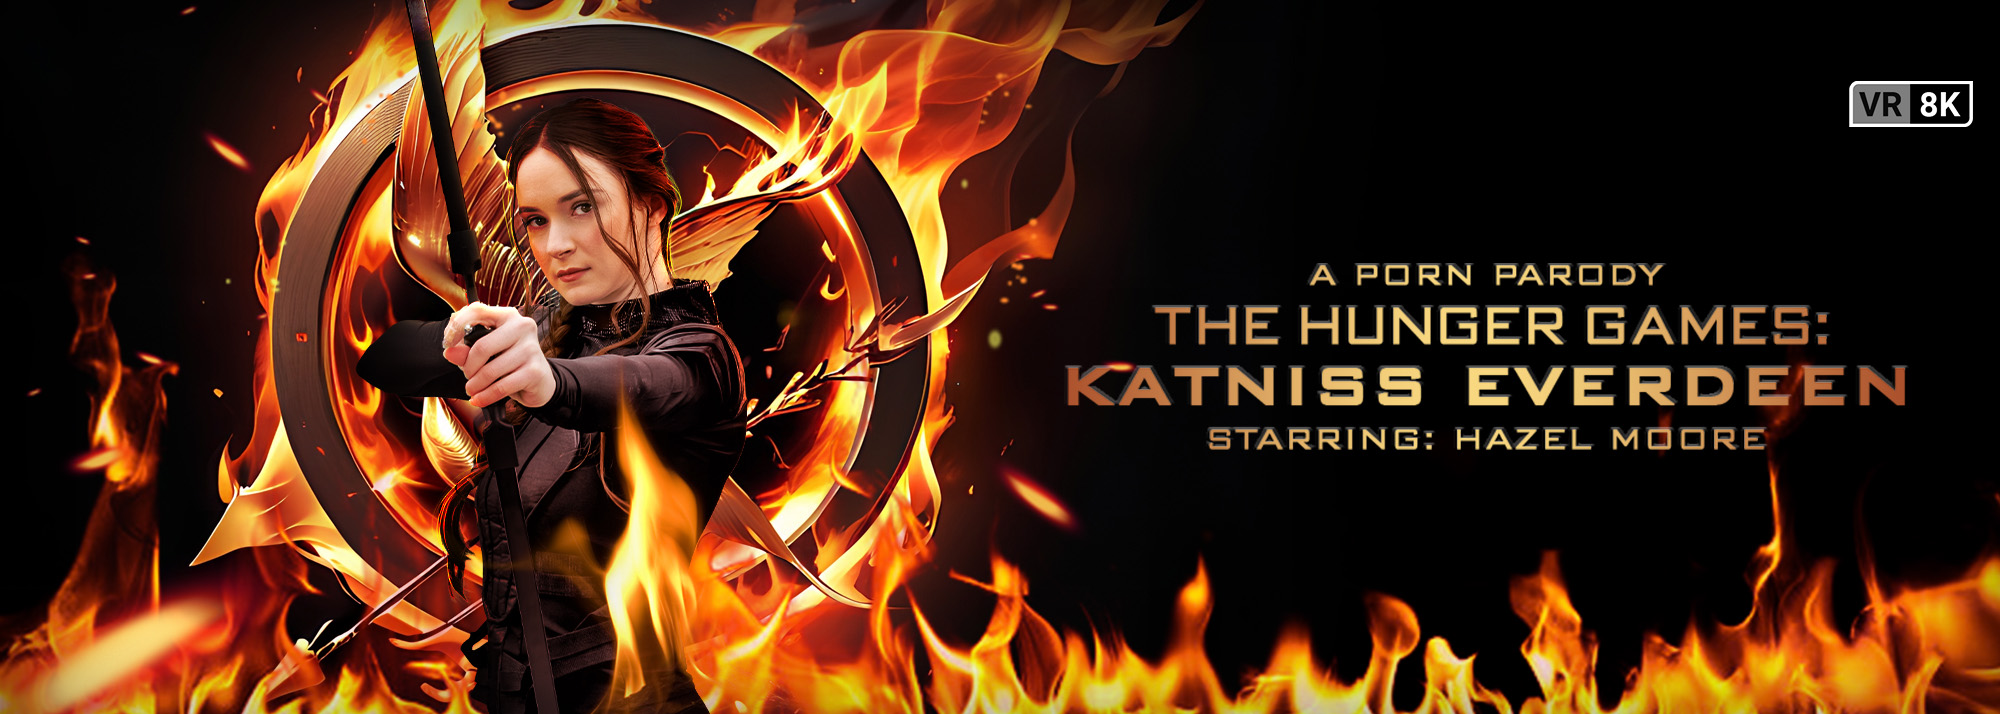 The Hunger Games: Katniss Everdeen (A Porn Parody) Slideshow